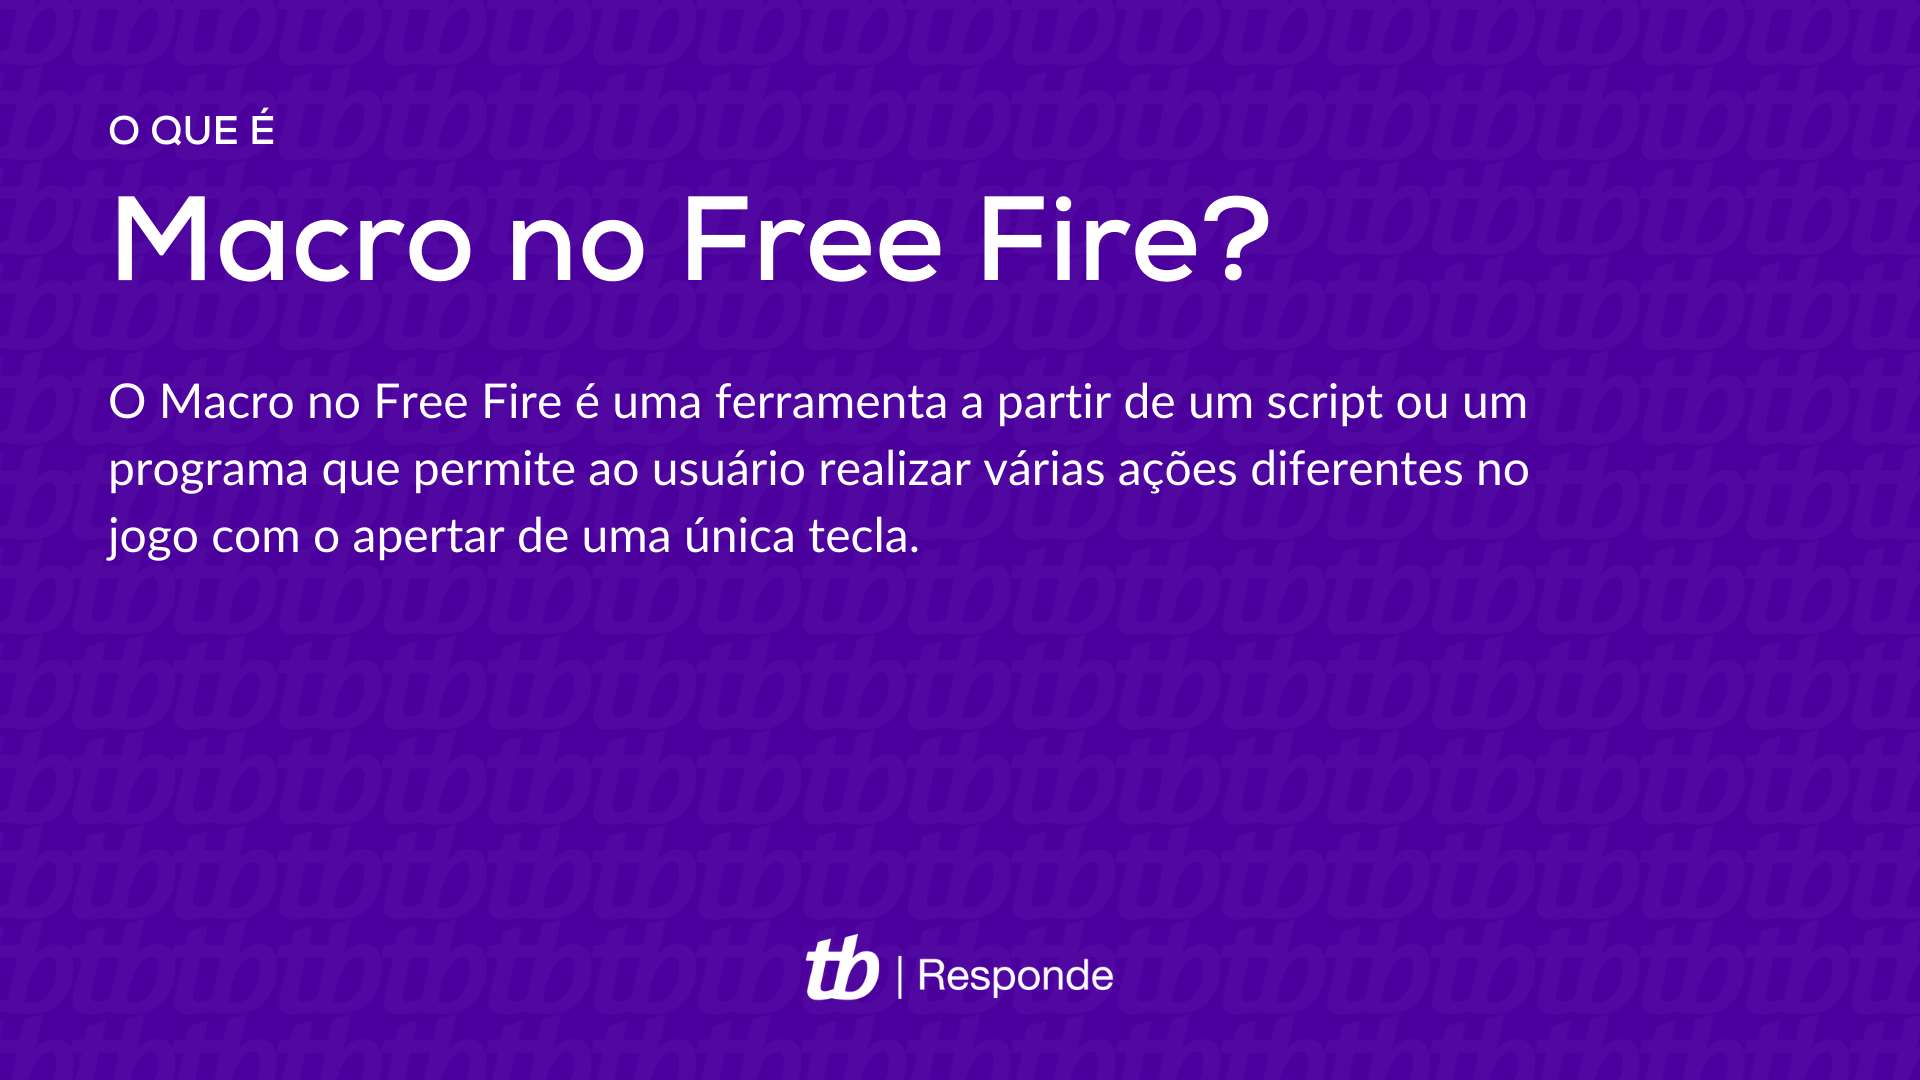 O que é Macro no Free Fire?